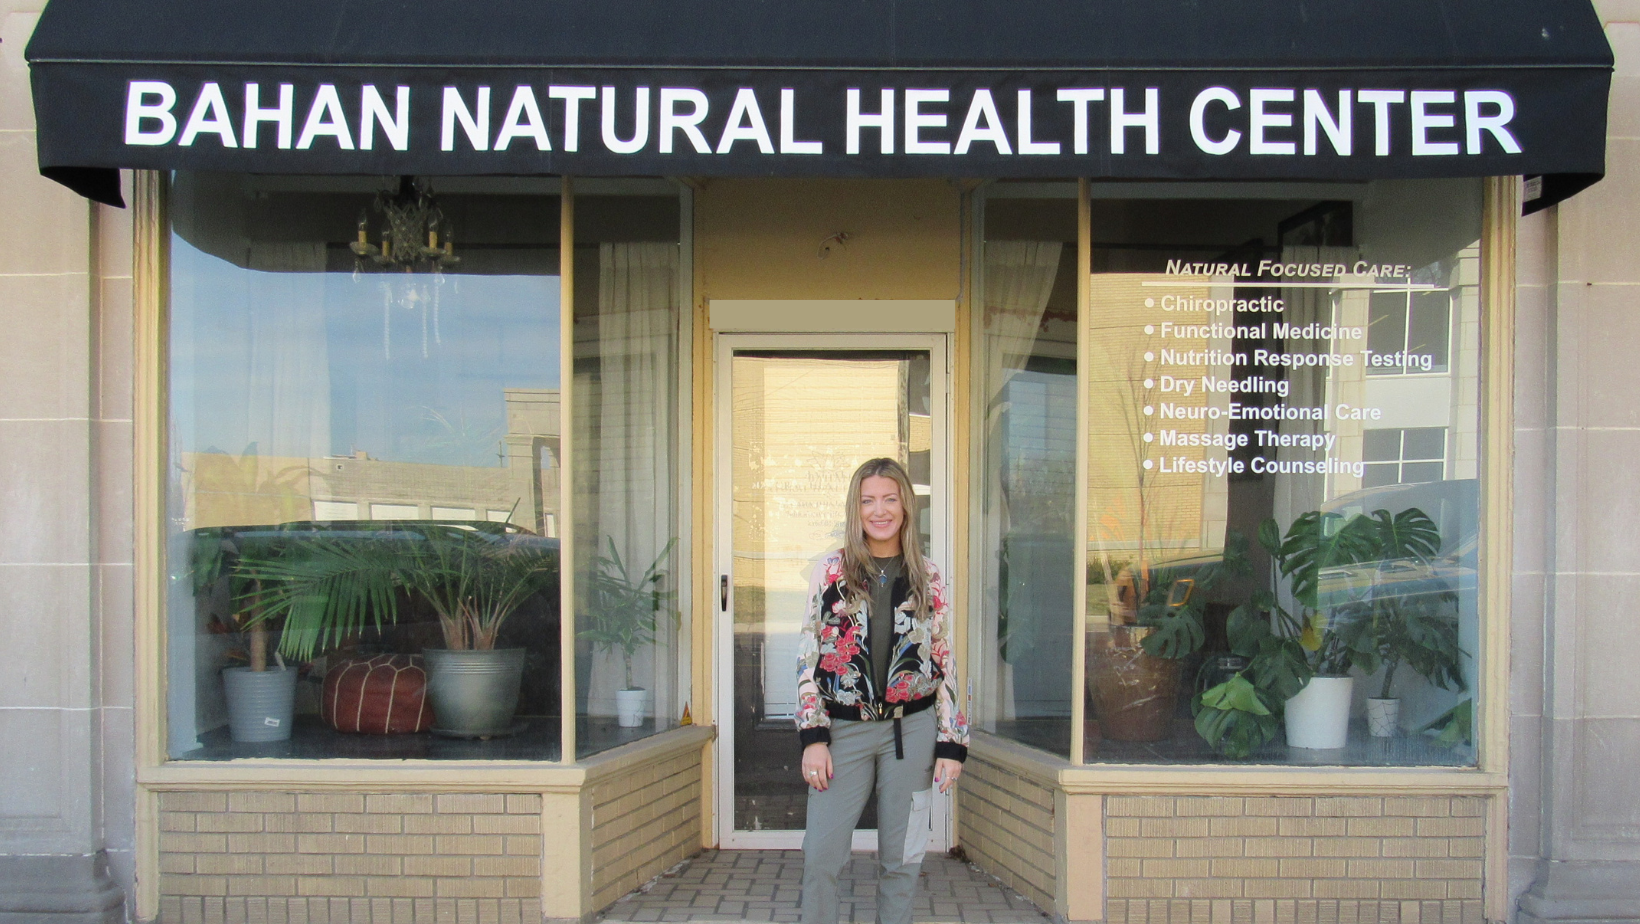 Dr. Samantha Bahan at the Bahan Natural Health Center in Lakewood Ohio.